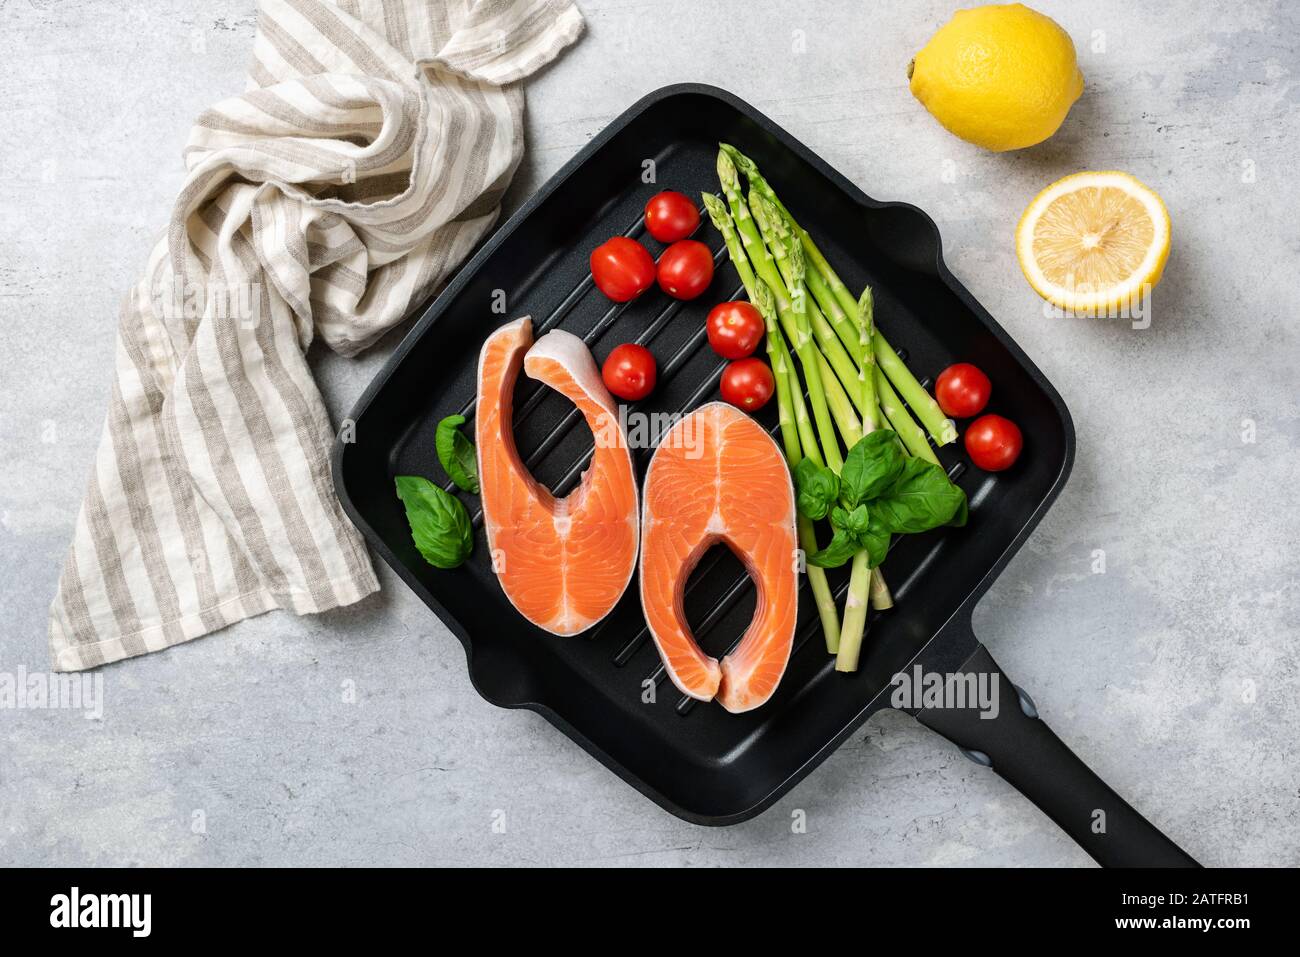 Lachssteaks, Asparagus Und Gemüse Auf EINER Grillpfanne. Unbehacktes Fischsteak Und Gemüse. Kochvorgang Stockfoto